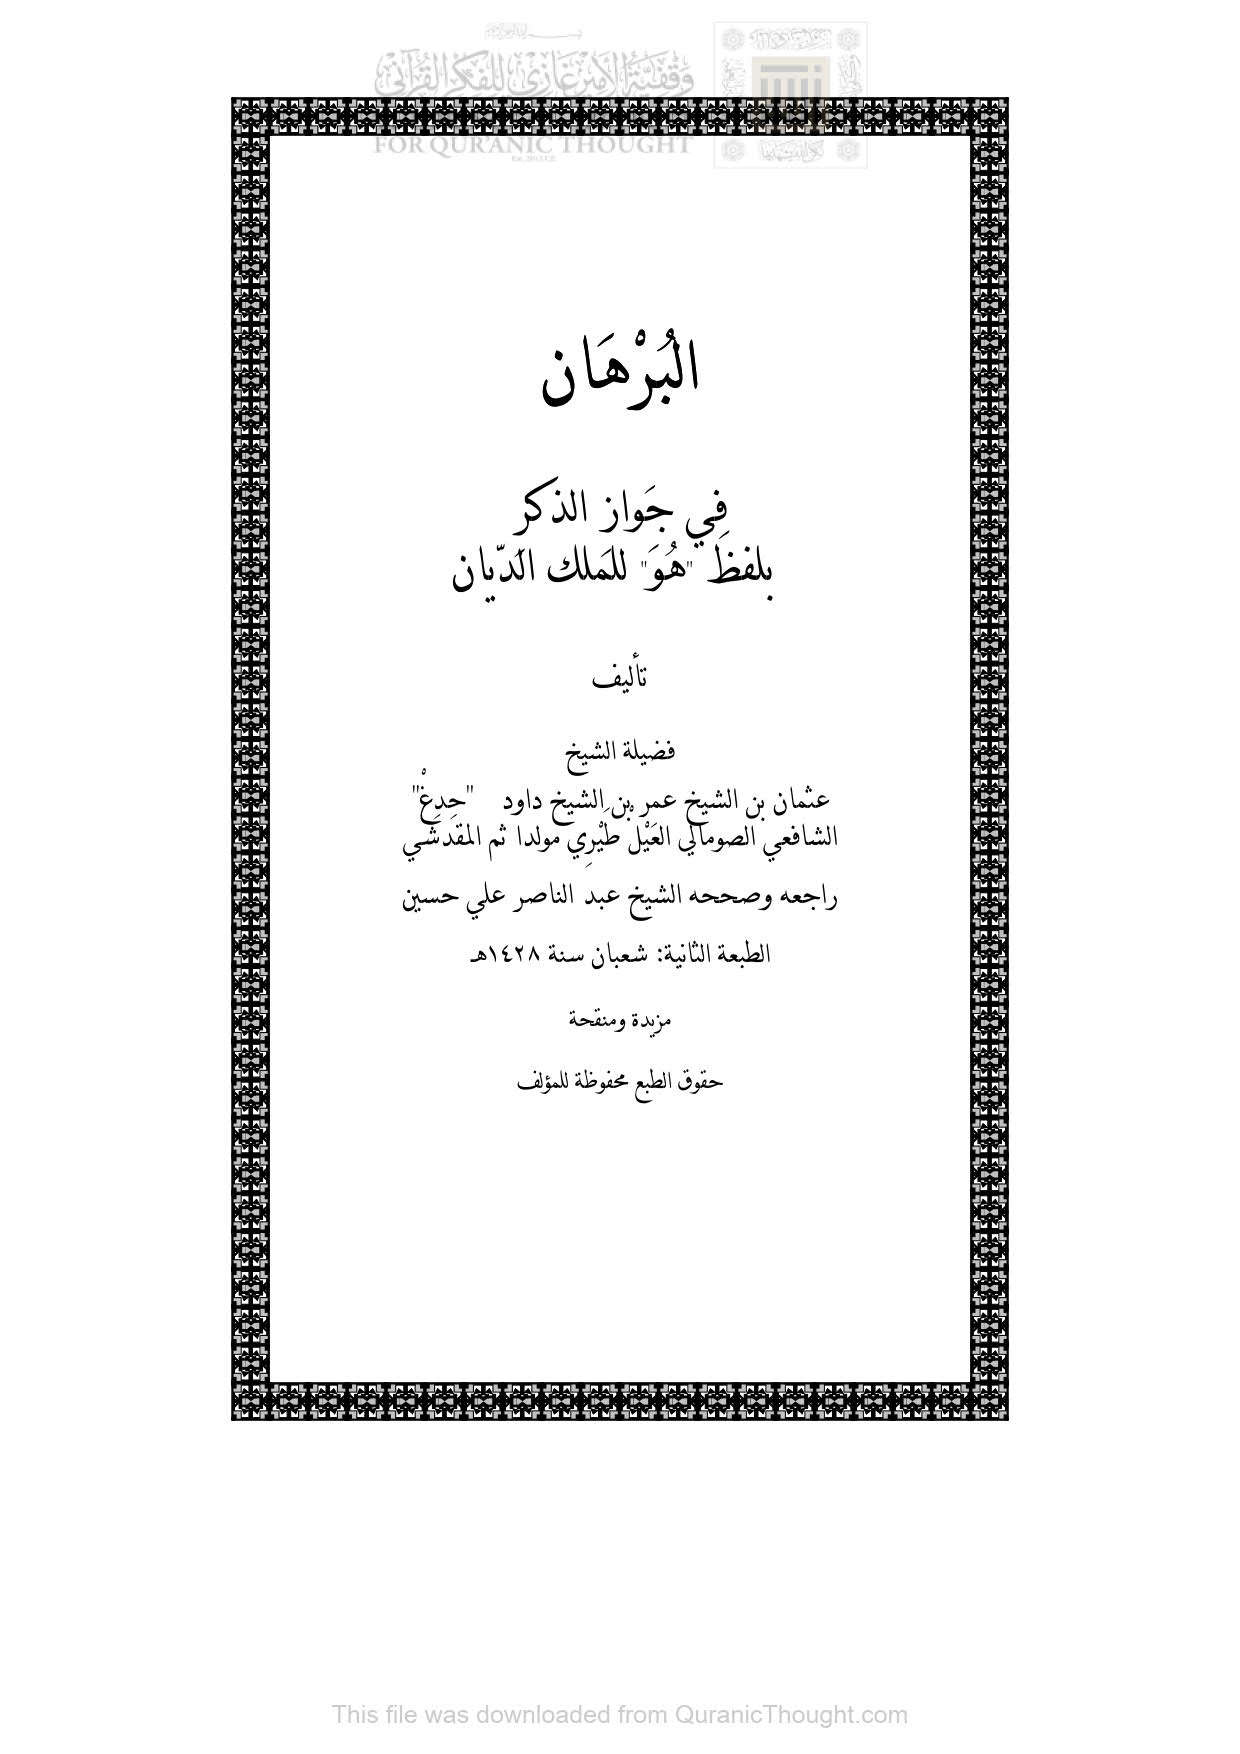 البرهان في جواز الذكر بلفظ ( هو ) للملك الديان _ عثمان بن عمر بن داود الصومالي ( الطبعة الثانية 1428هـ )